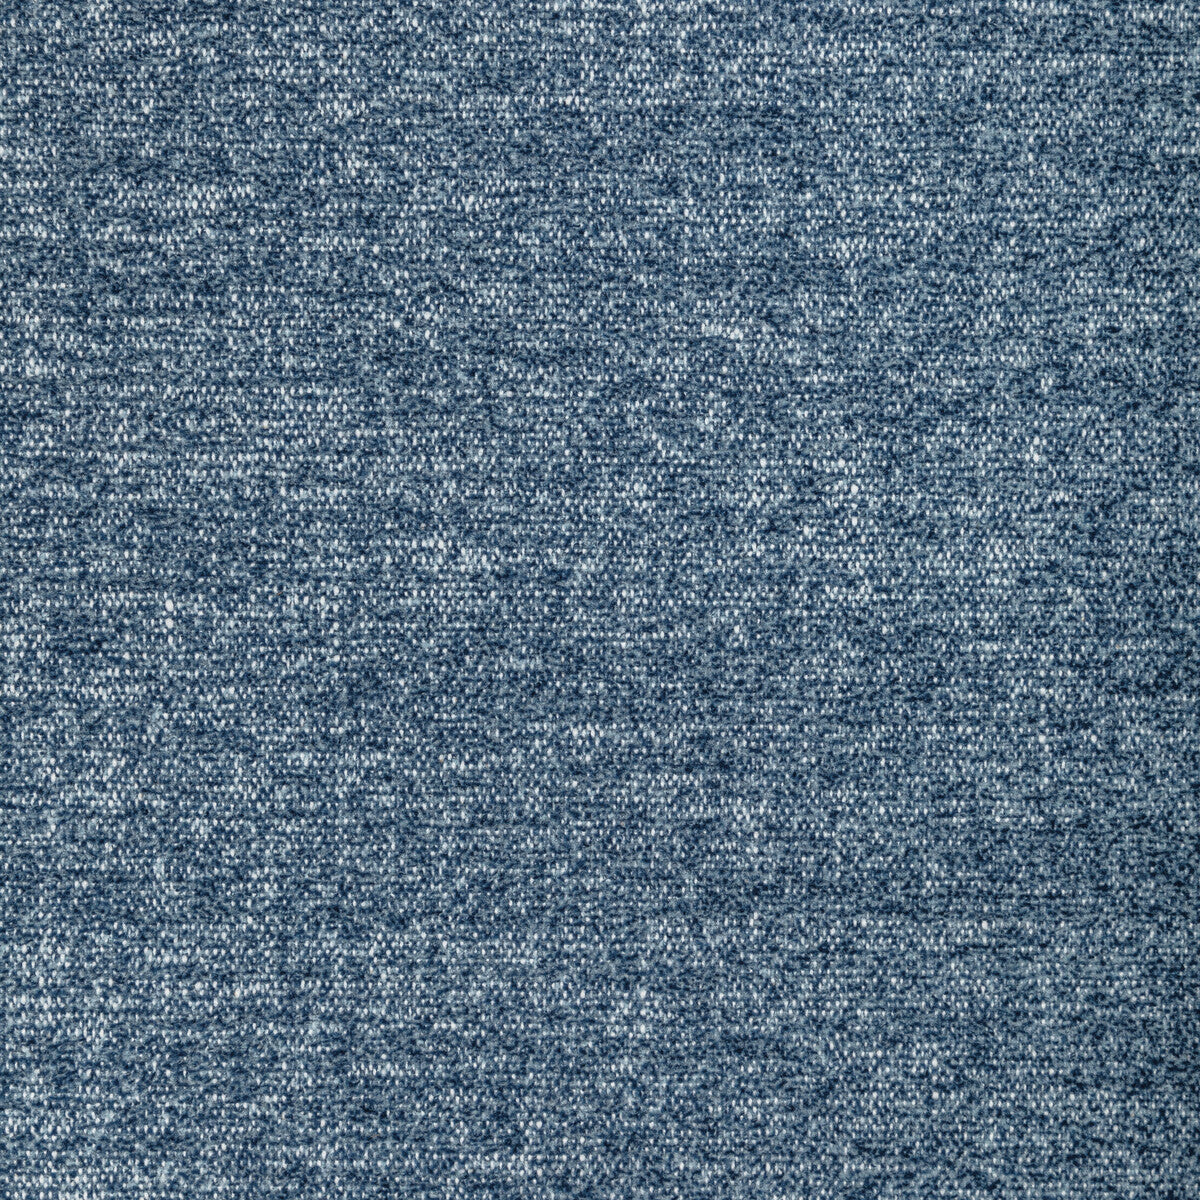 Kravet Basics fabric in 36373-5 color - pattern 36373.5.0 - by Kravet Basics